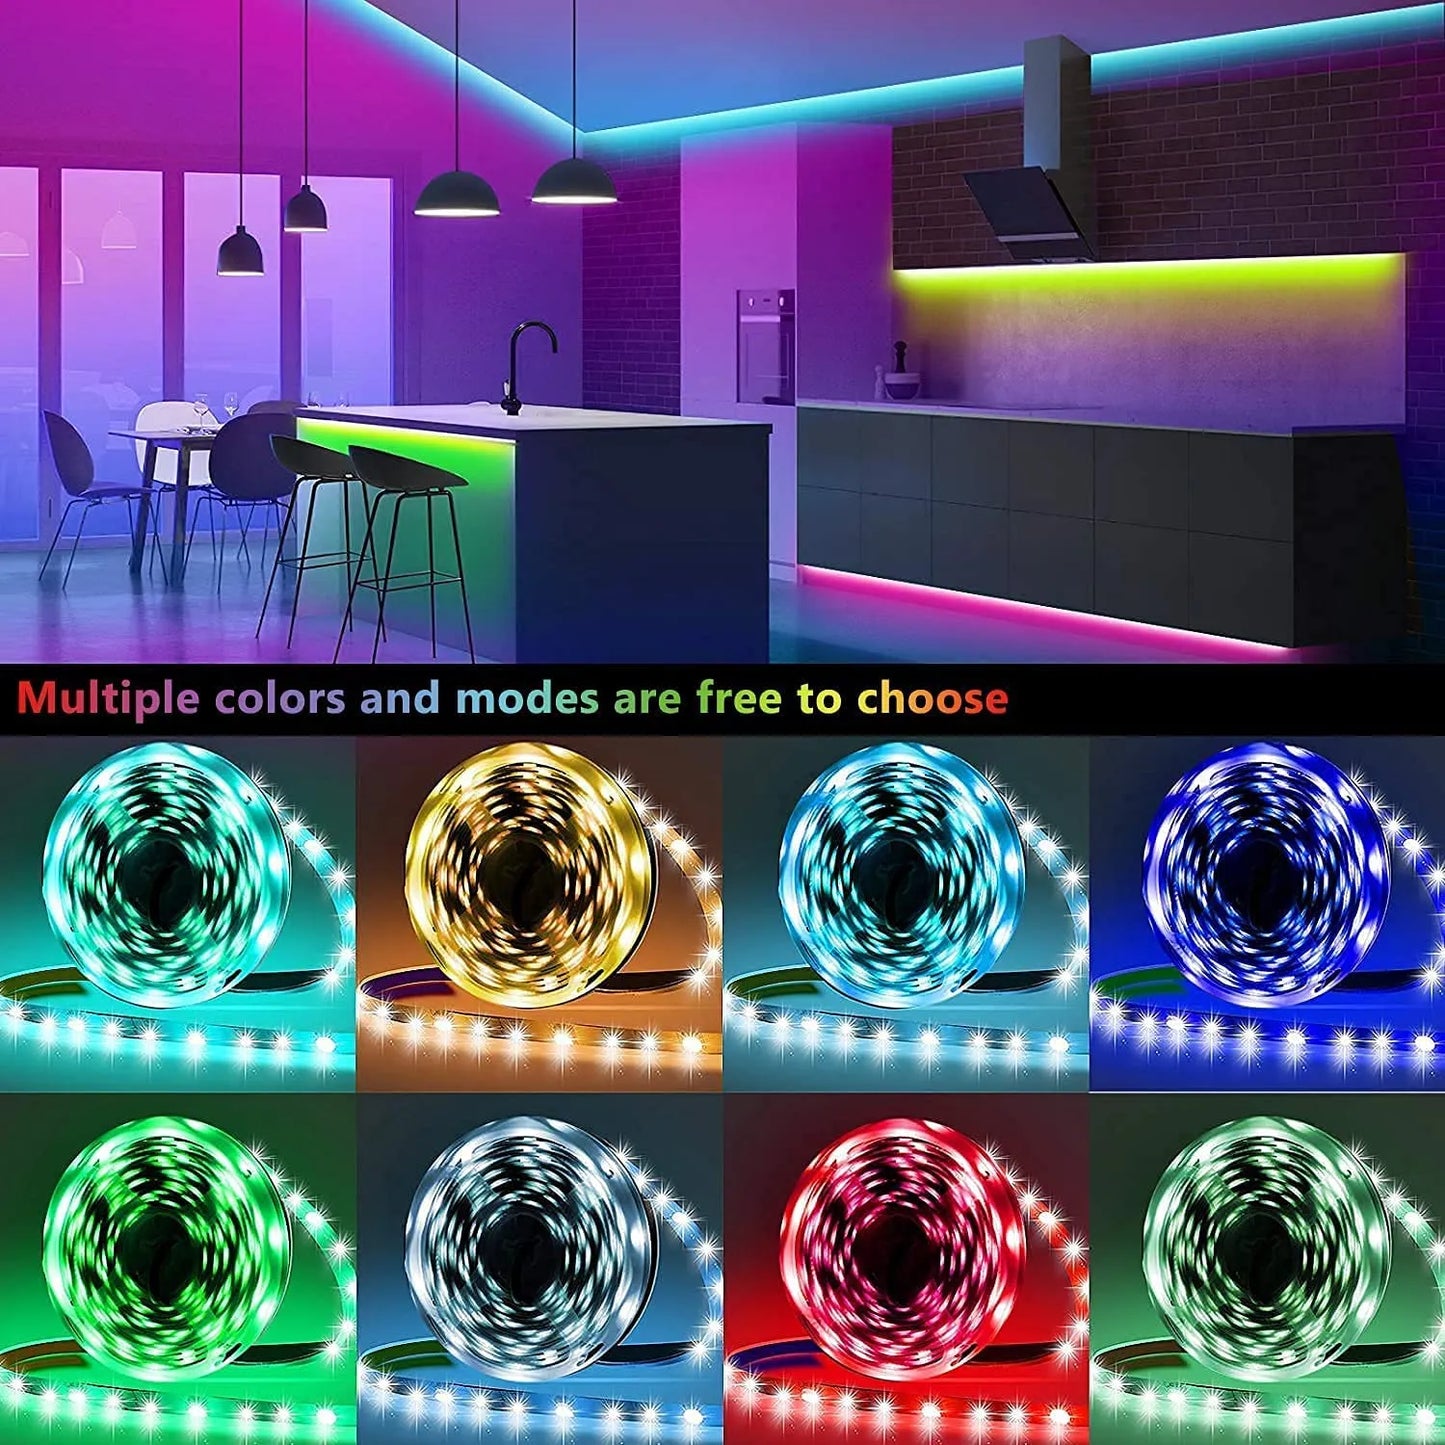 ColorRGB, bande lumineuse LED, 16 millions de couleurs avec contrôle par application